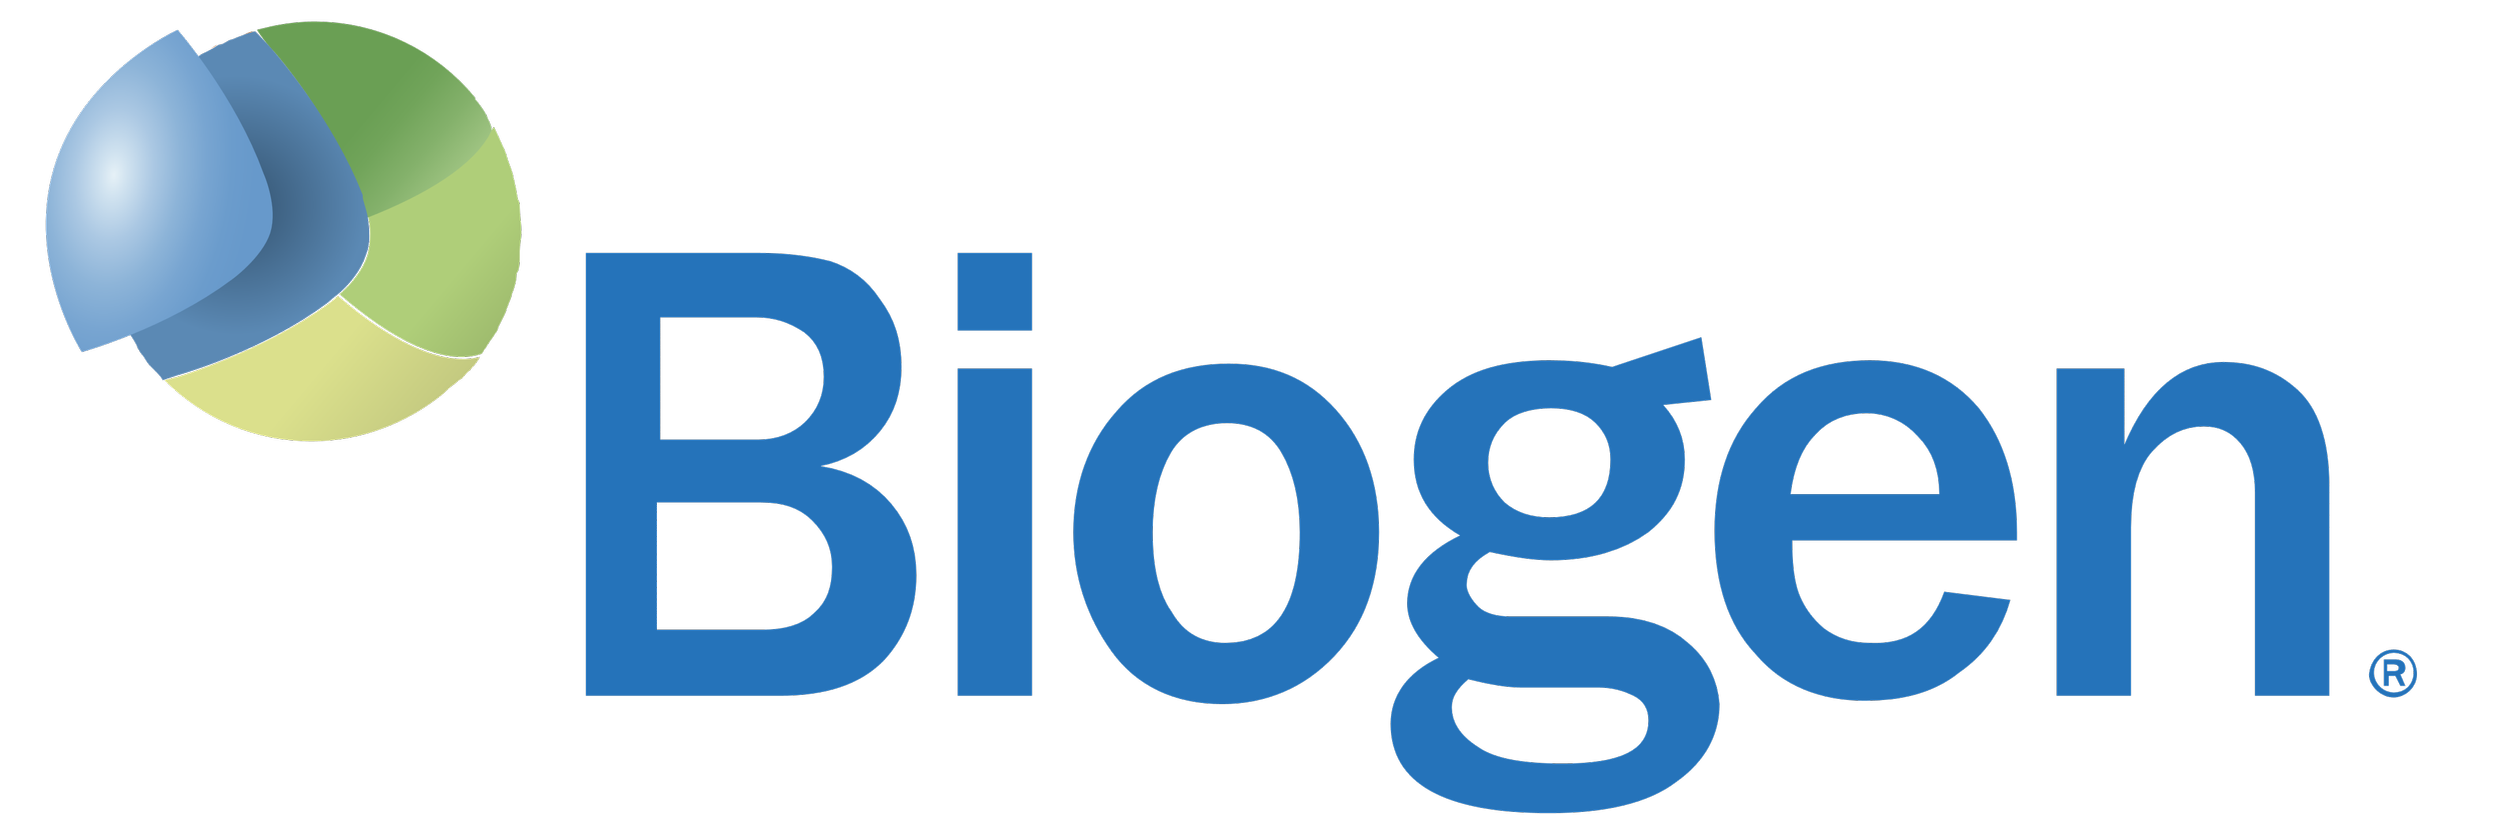 Biogen_logo_logotype_symbol-1013945325.png